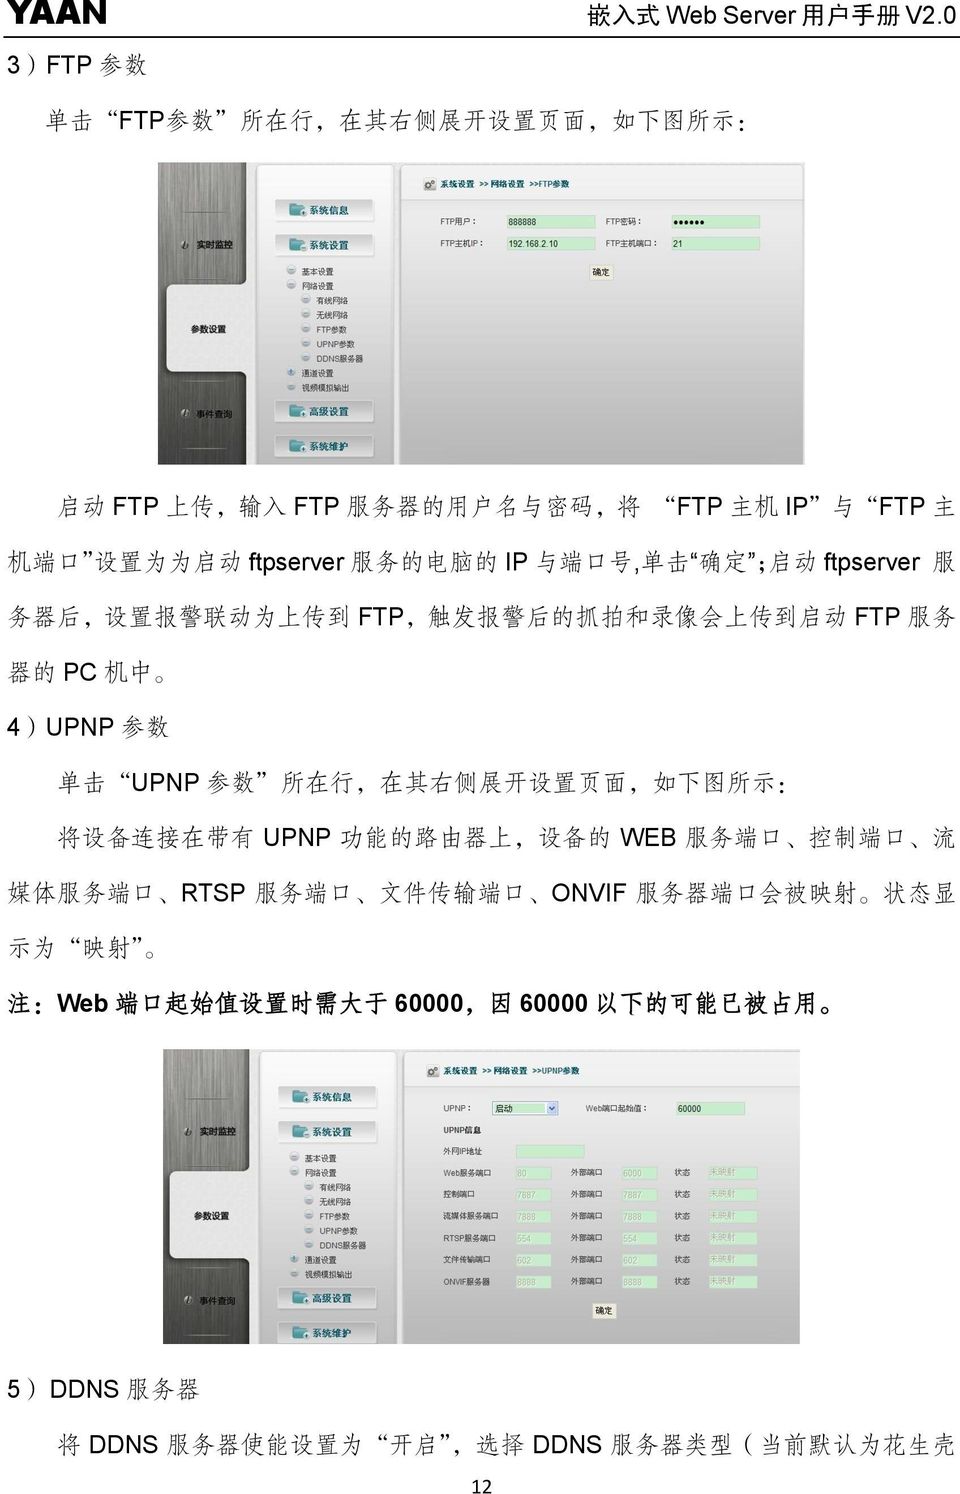 行, 在 其 右 侧 展 开 设 置 页 面, 如 下 图 所 示 : 将 设 备 连 接 在 带 有 UPNP 功 能 的 路 由 器 上, 设 备 的 WEB 服 务 端 口 控 制 端 口 流 媒 体 服 务 端 口 RTSP 服 务 端 口 文 件 传 输 端 口 ONVIF 服 务 器 端 口 会 被 映